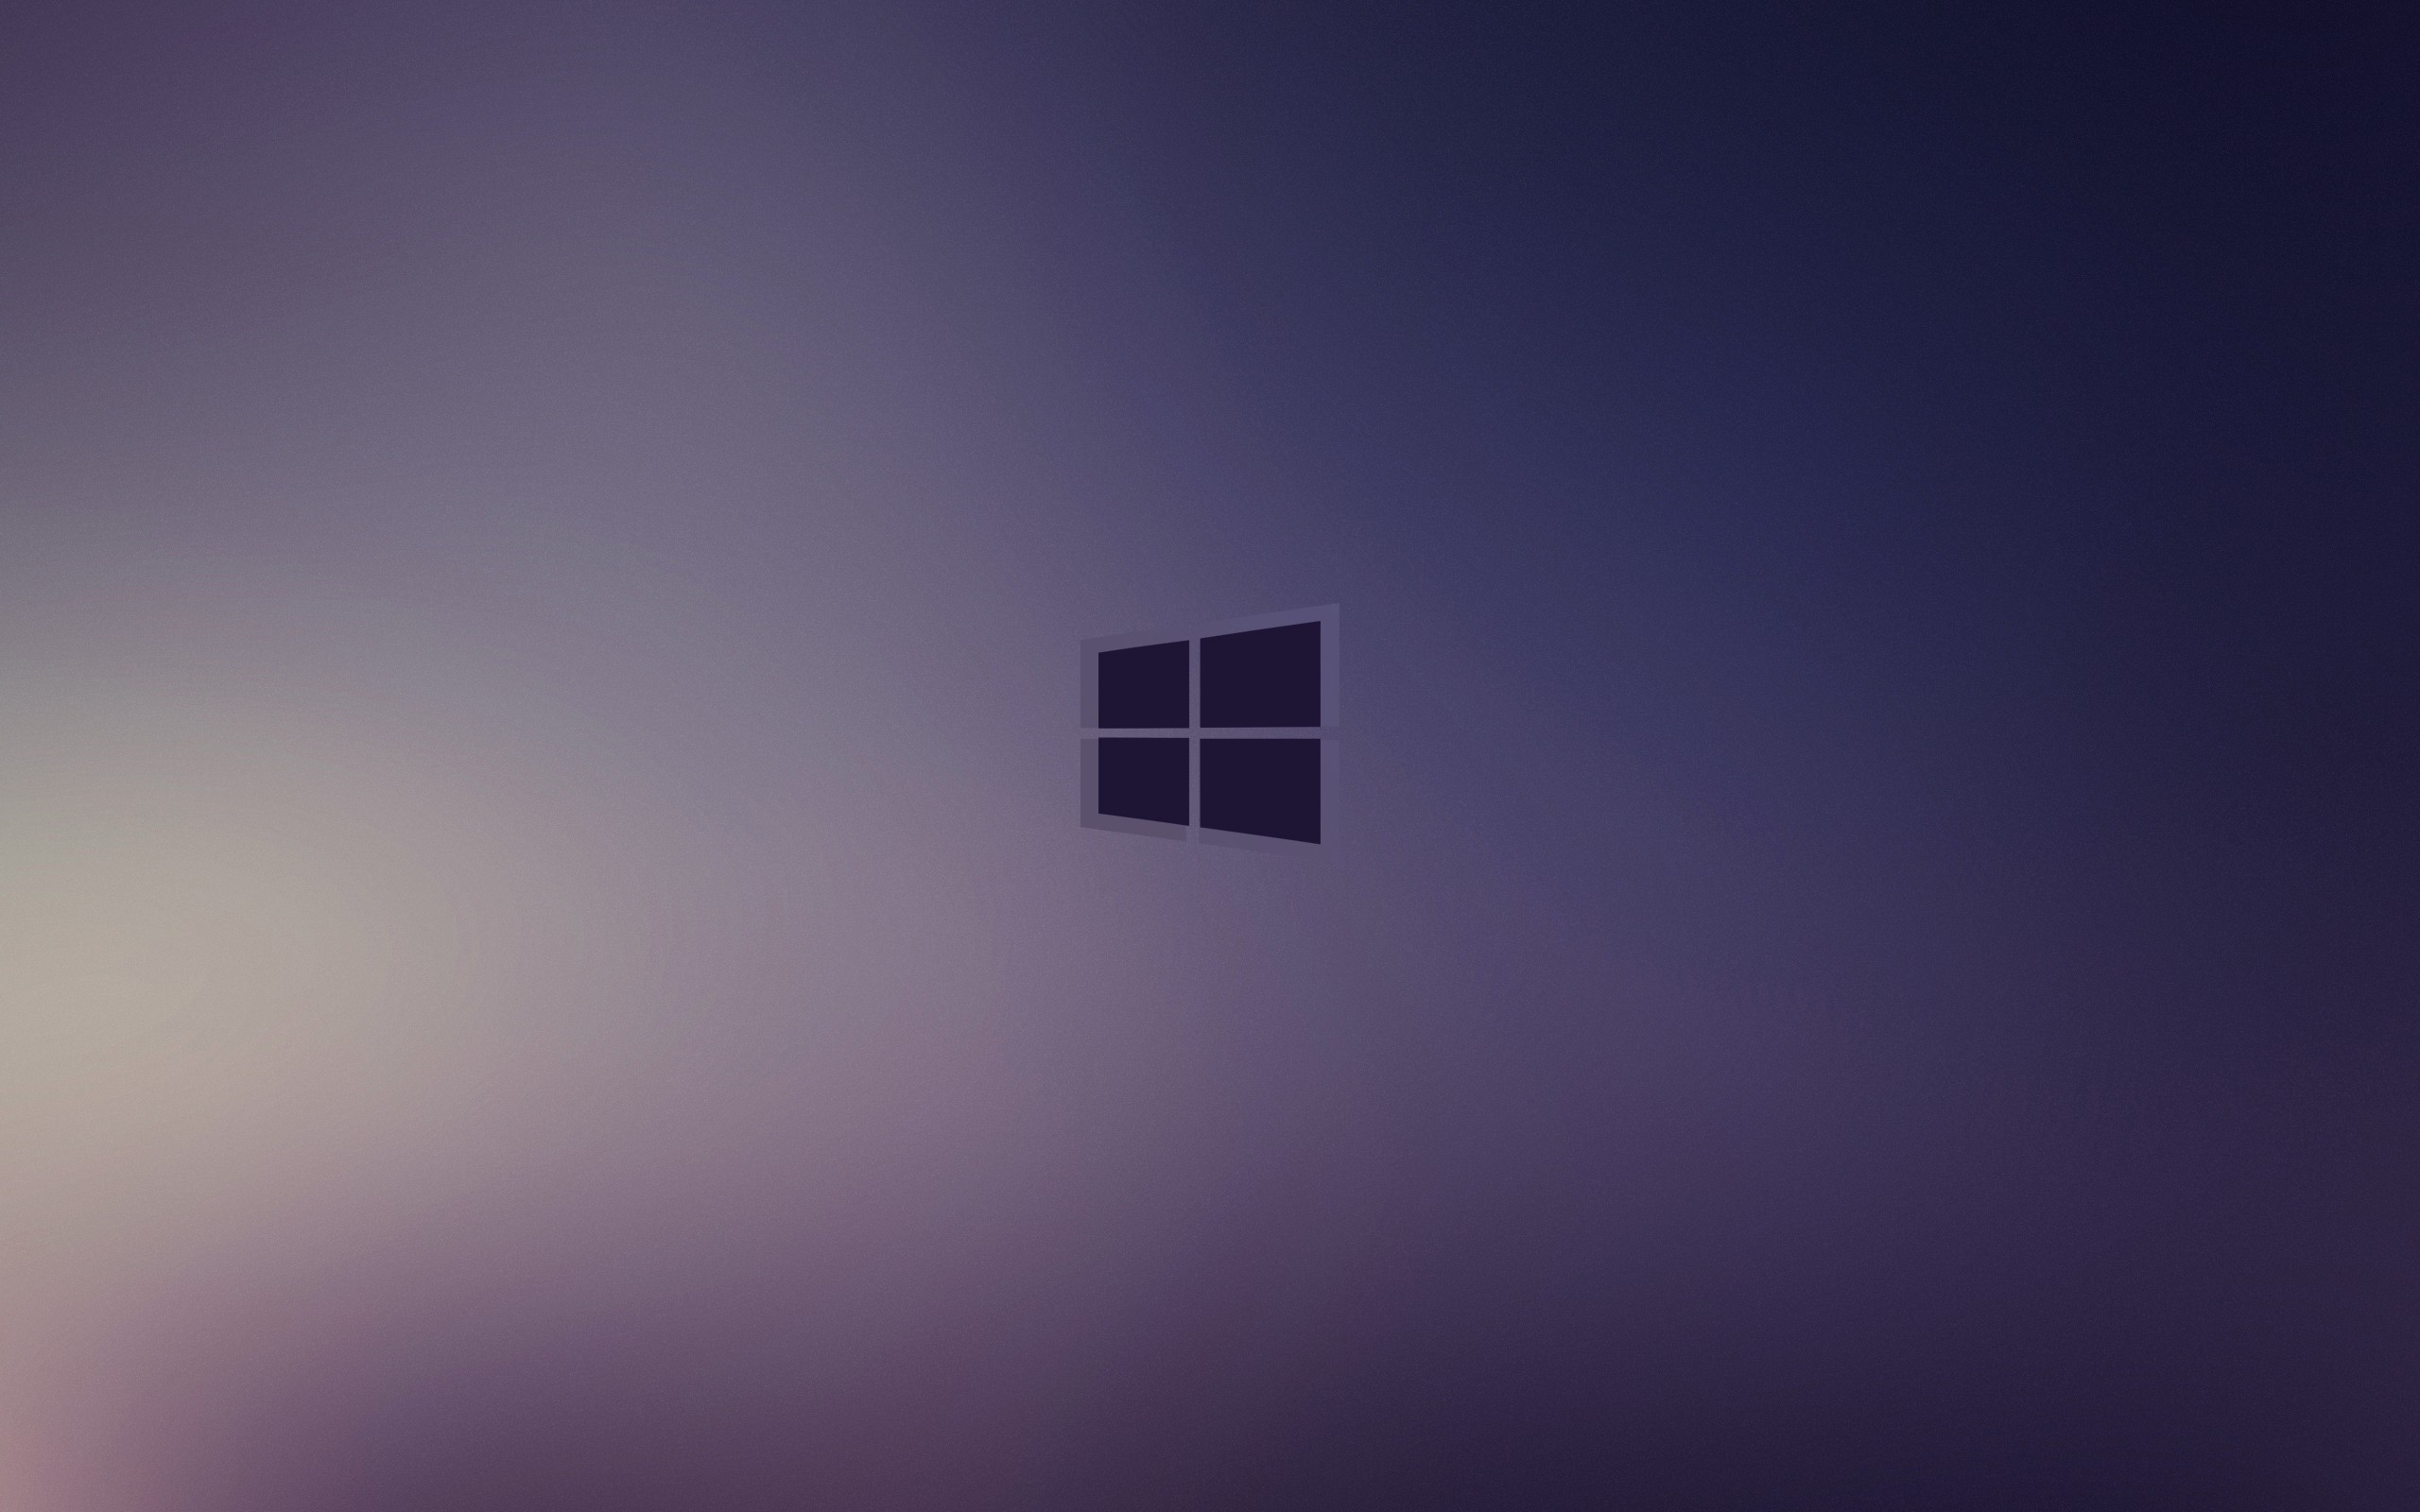 Windows 10 wallpaper HD ·① Download free cool full HD ...